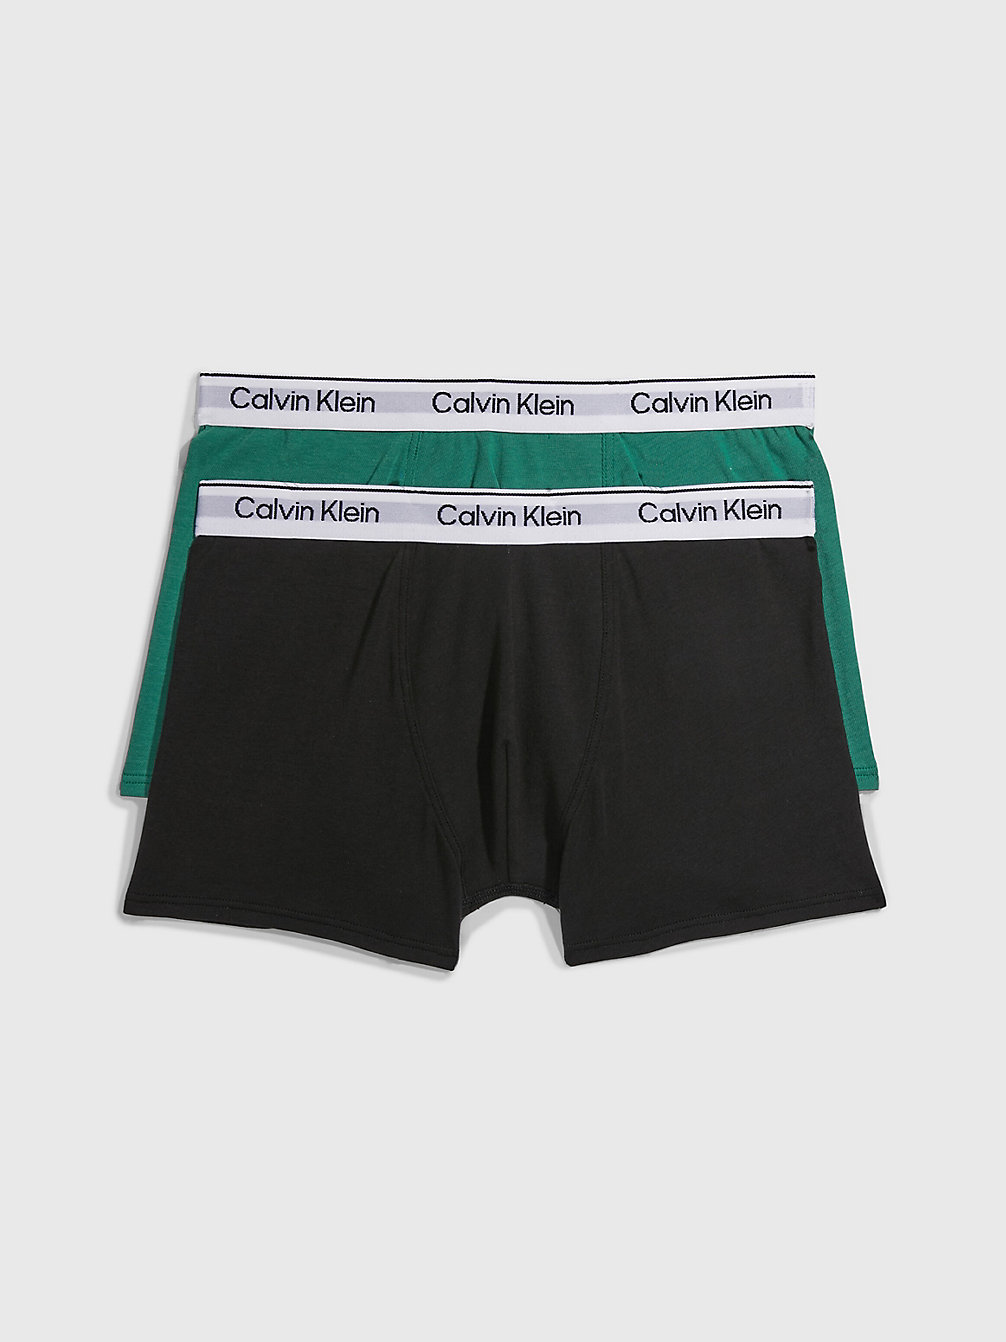 FOLIAGEGREEN/PVHBLACK > 2er-Pack Boxershorts Für Jungen - Modern Cotton > undefined Jungen - Calvin Klein